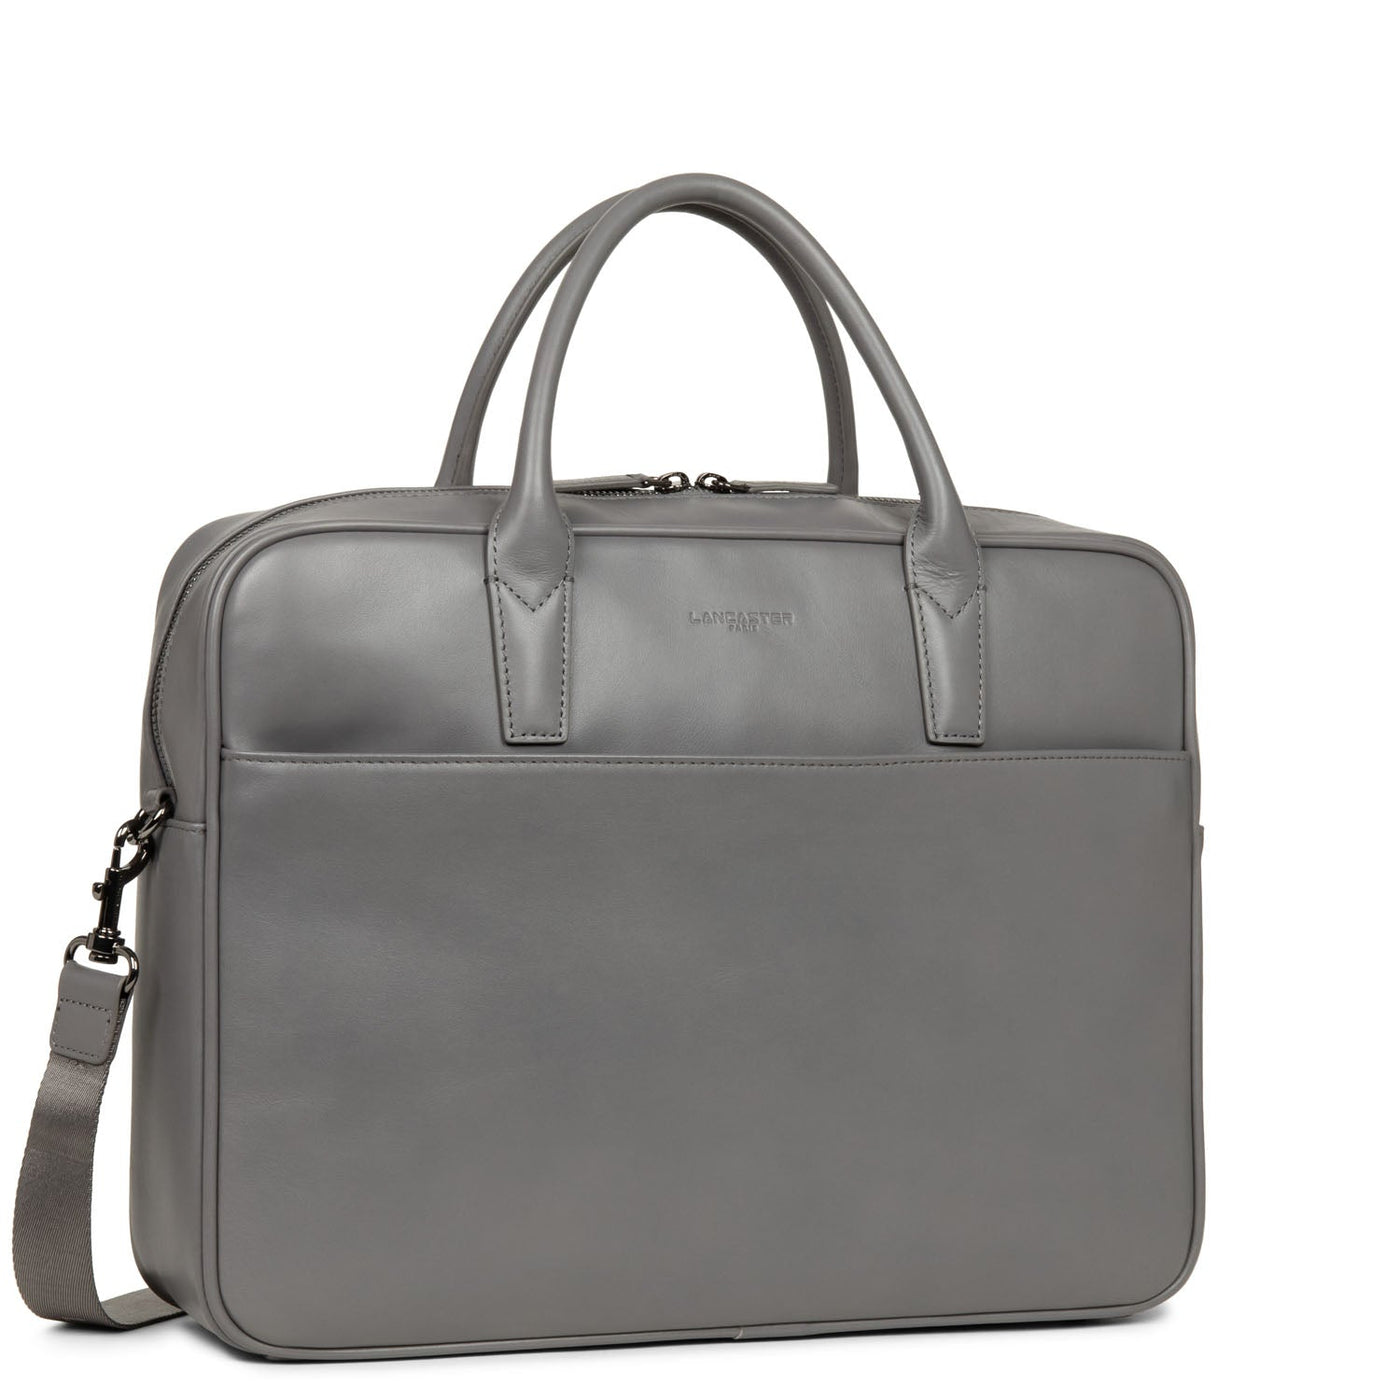 portfolio document holder bag - capital #couleur_gris